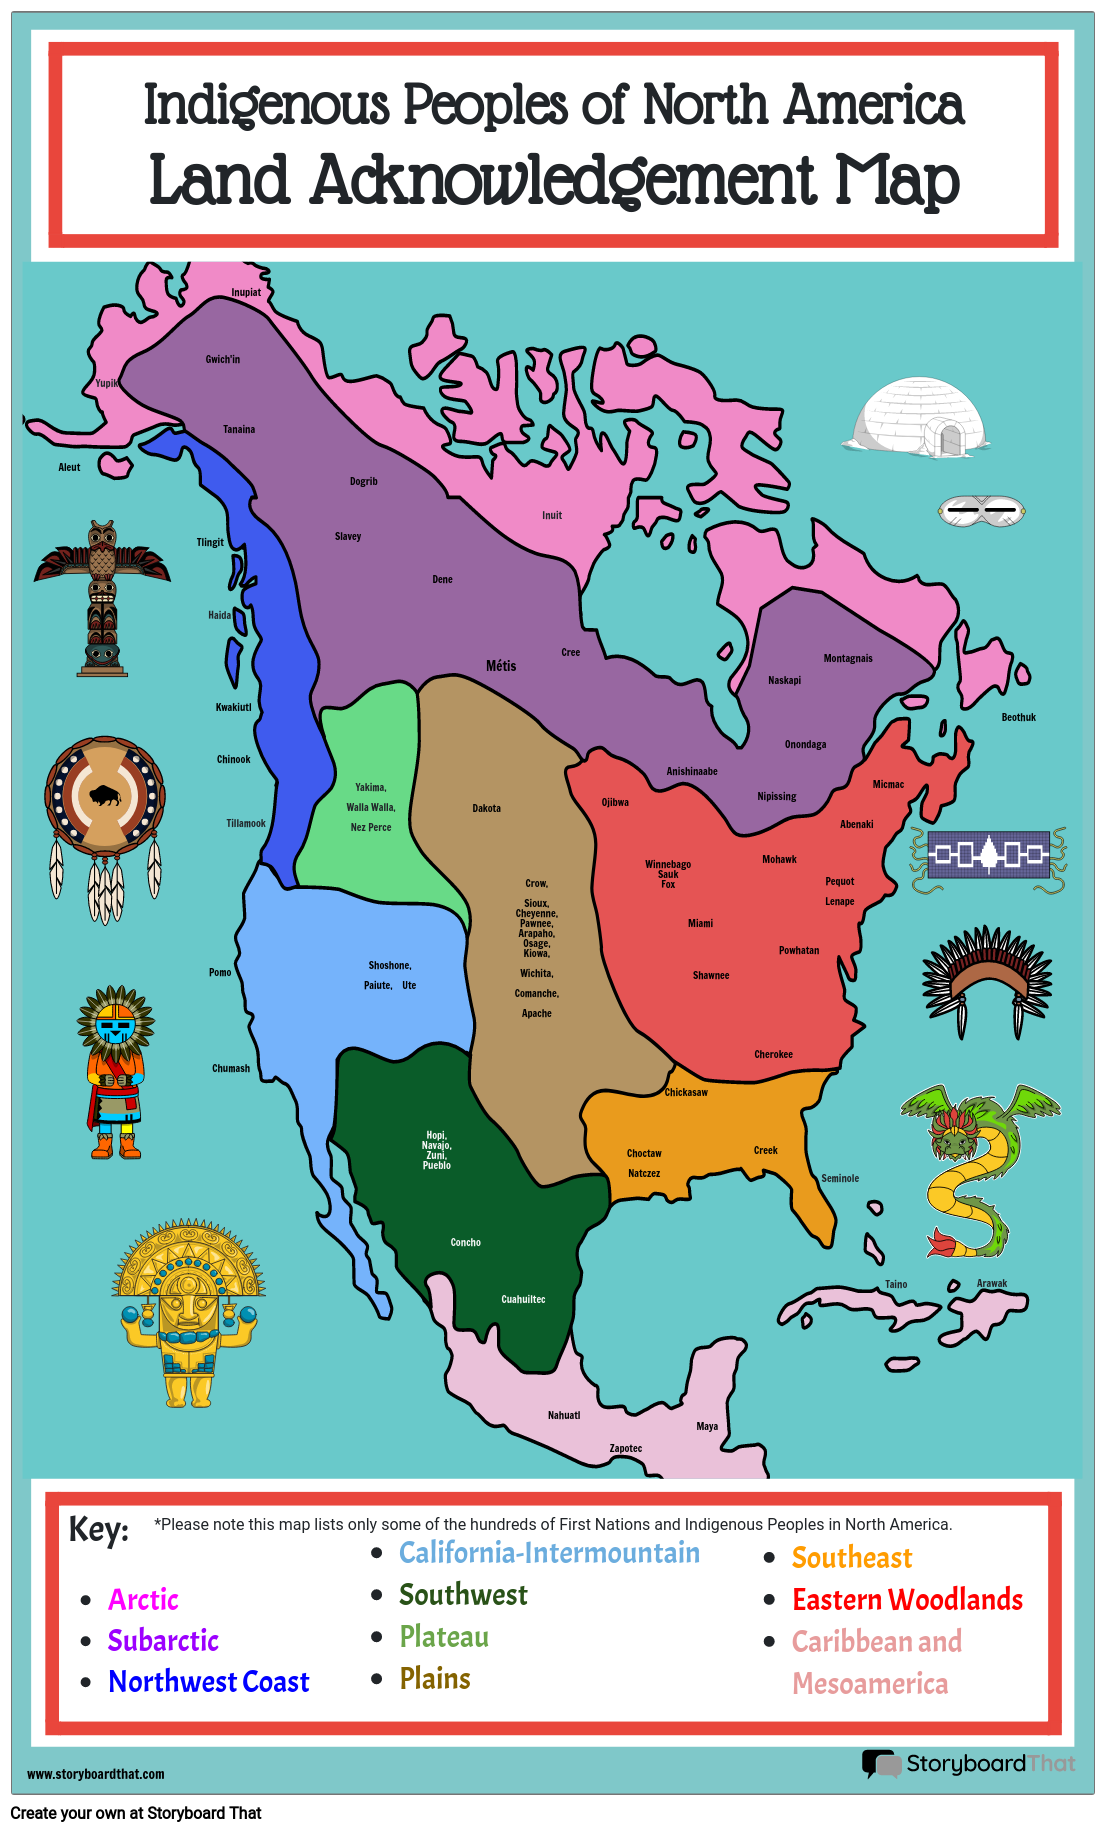 Popoli Indigeni del Nord America, Mappa del Riconoscimento Della Terra